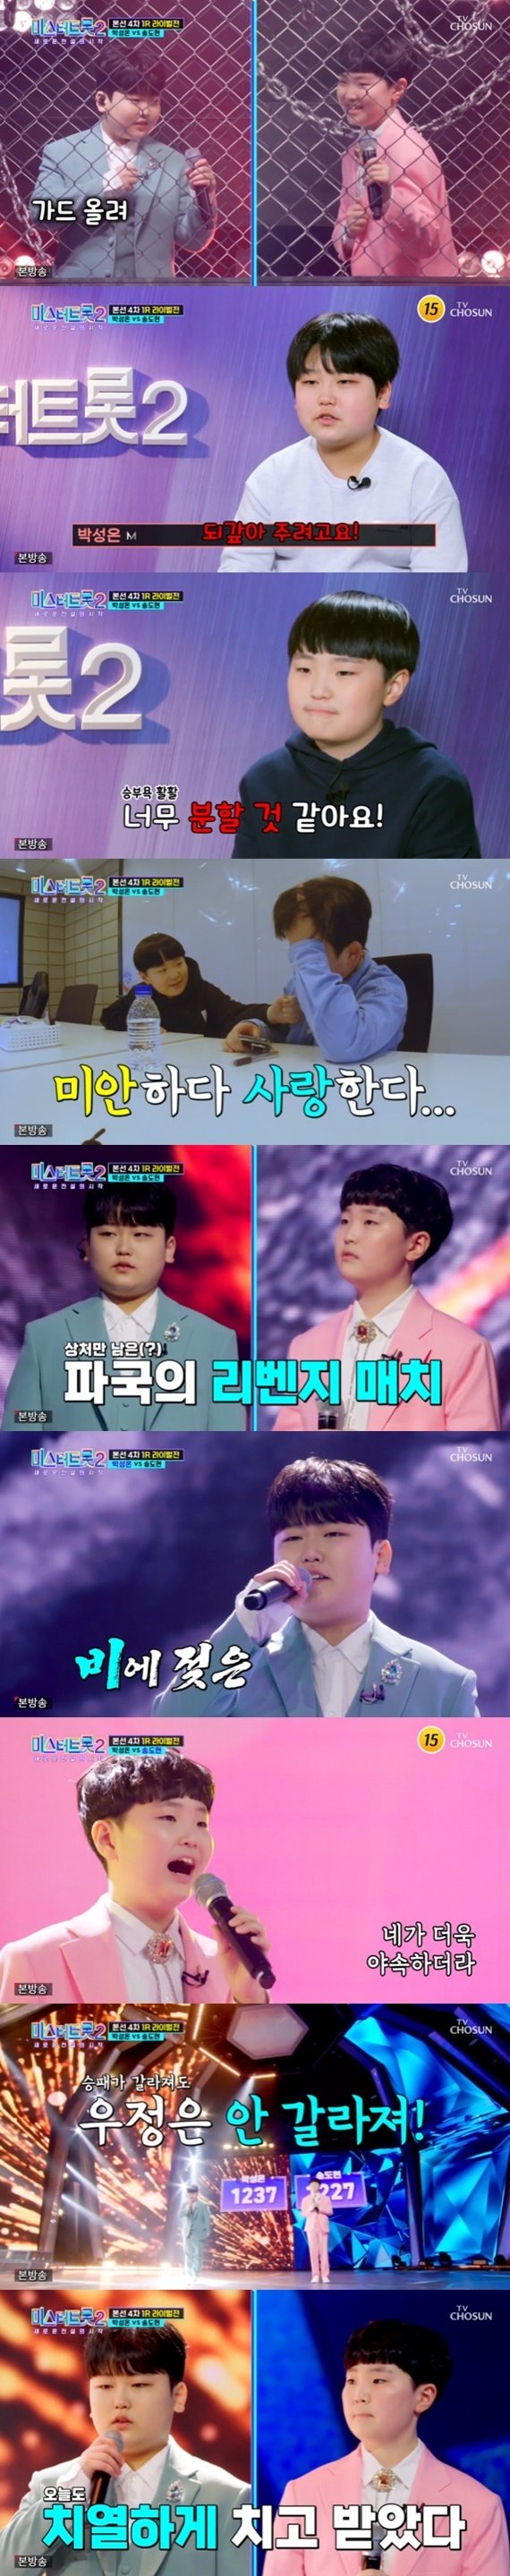 '미스터트롯2' 박성온 vs 송도현, 라이벌 재대결…10점 차 접전 [RE:TV]